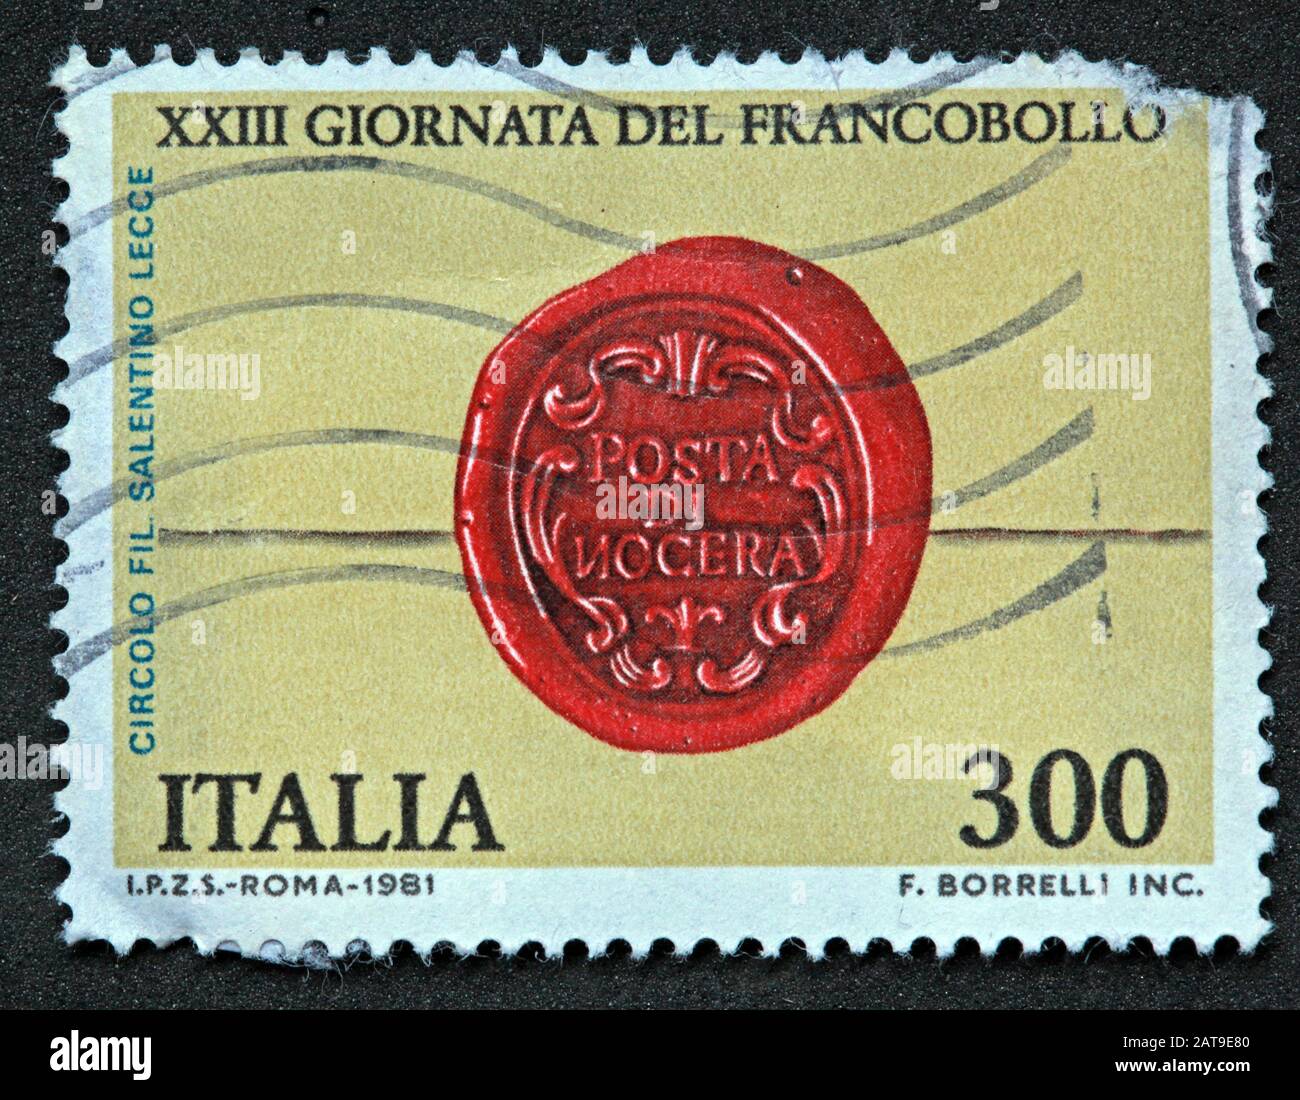 Francobollo italiano, poste Italia usato e affrancato, Italia 300lire Roma 1981 f.Borrelli Inc - XXIII Giornata del Francobollo Foto Stock